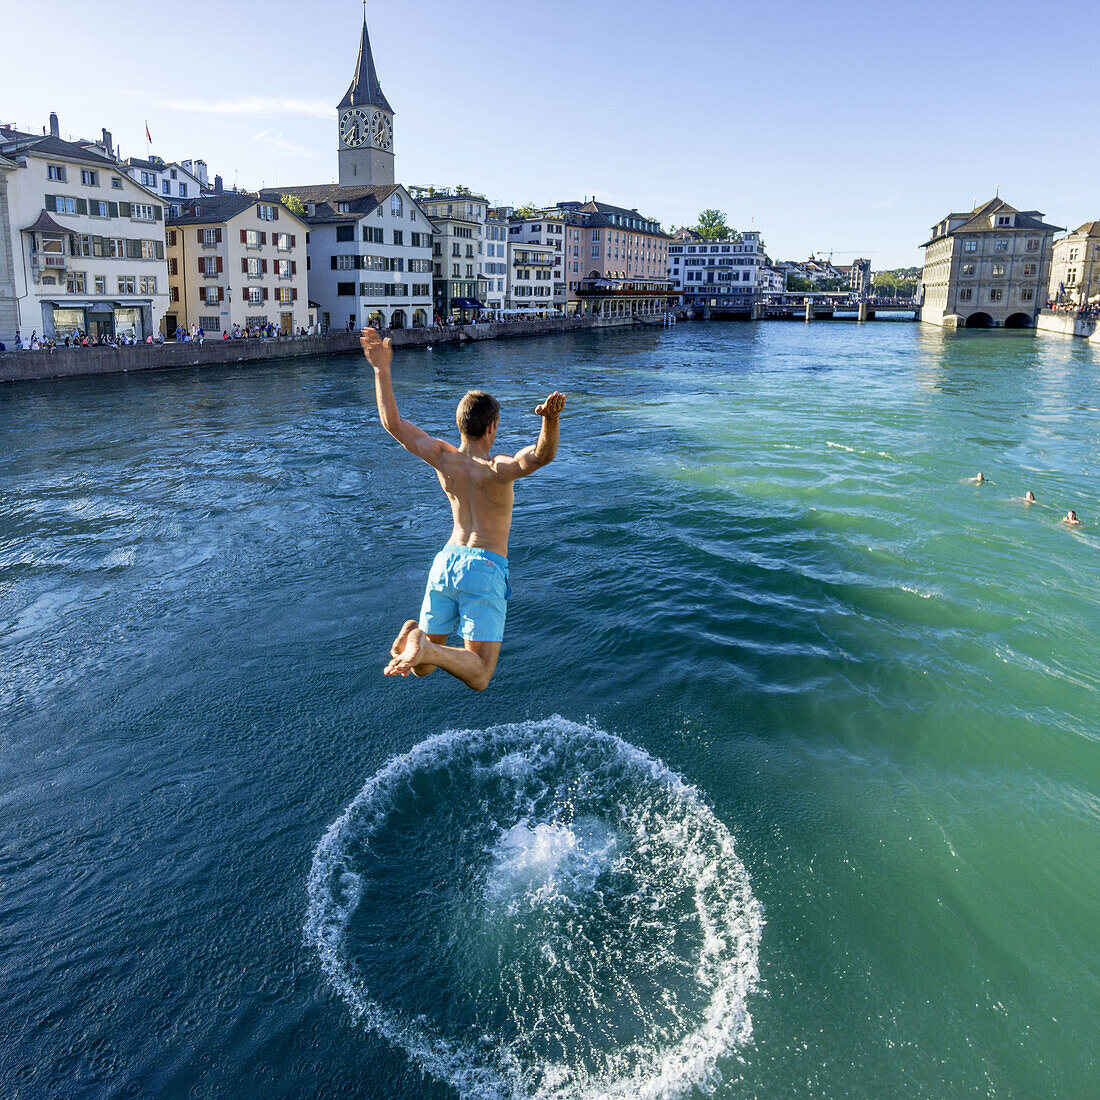 Man jumping into River Limmat, Zurich, Switzerland